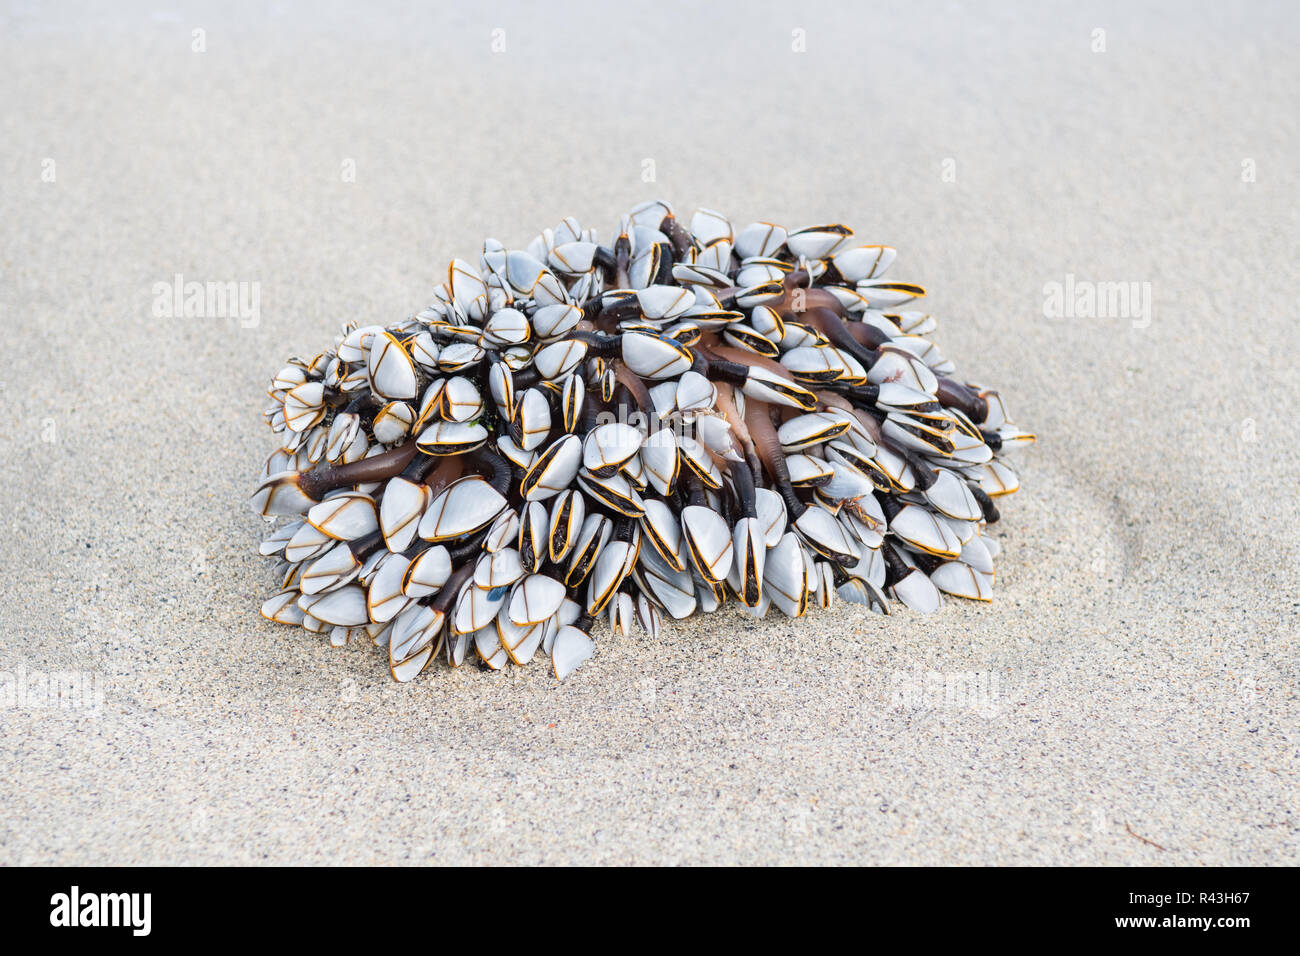 Gooseneck or goose barnacles - lepas anatifera - washed up on beach Stock Photo